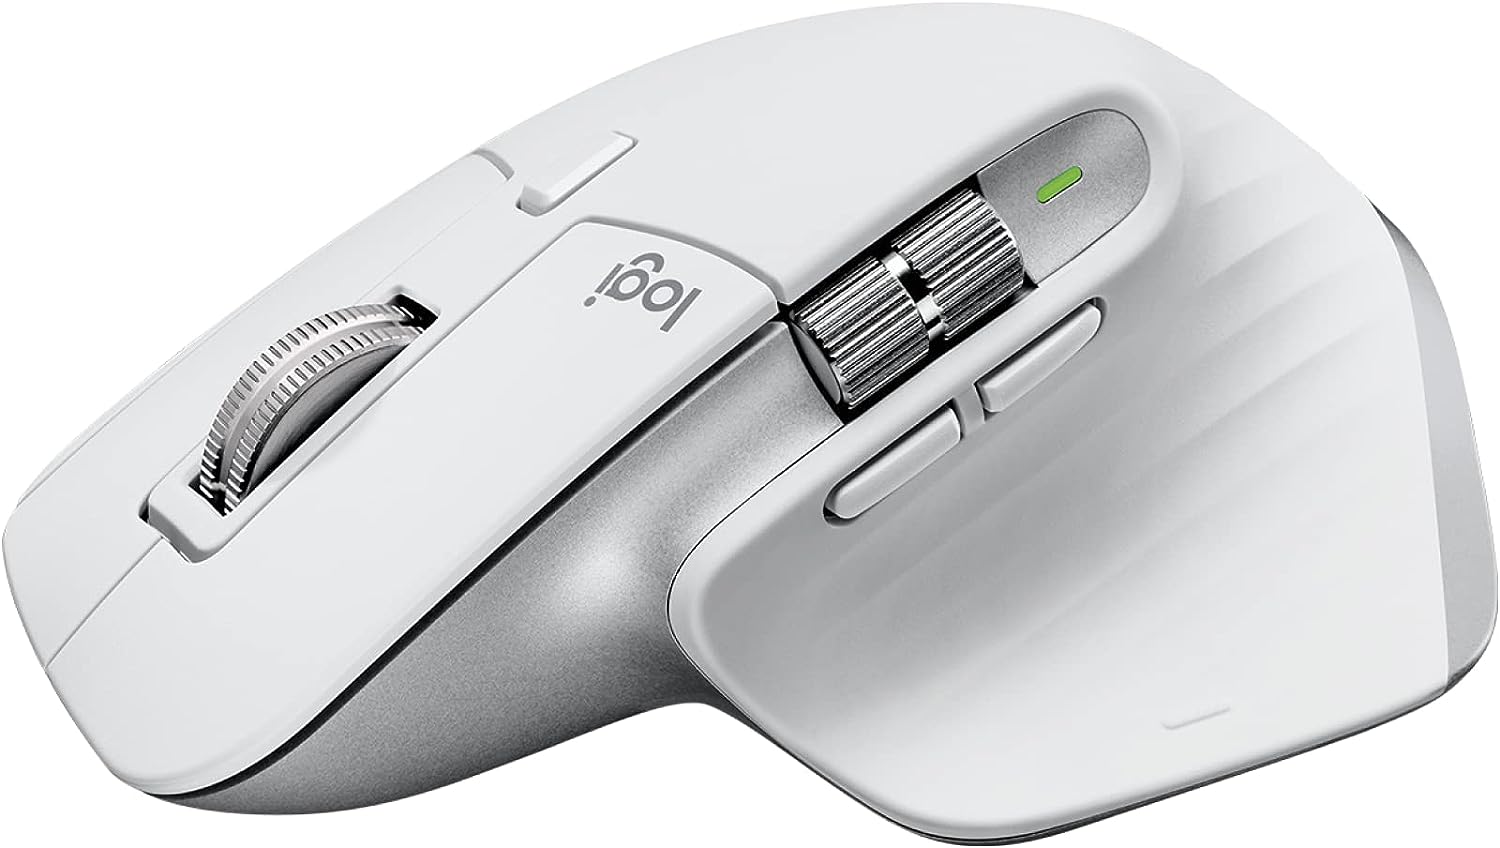 Mouse Sem Fio Logitech Mx Master 3s Com Sensor Darkfield Para Uso Em Qualquer Superfície, Design Ergonômico, Clique Silencioso, Conexão Usb Ou Bluetooth - Cinza Claro